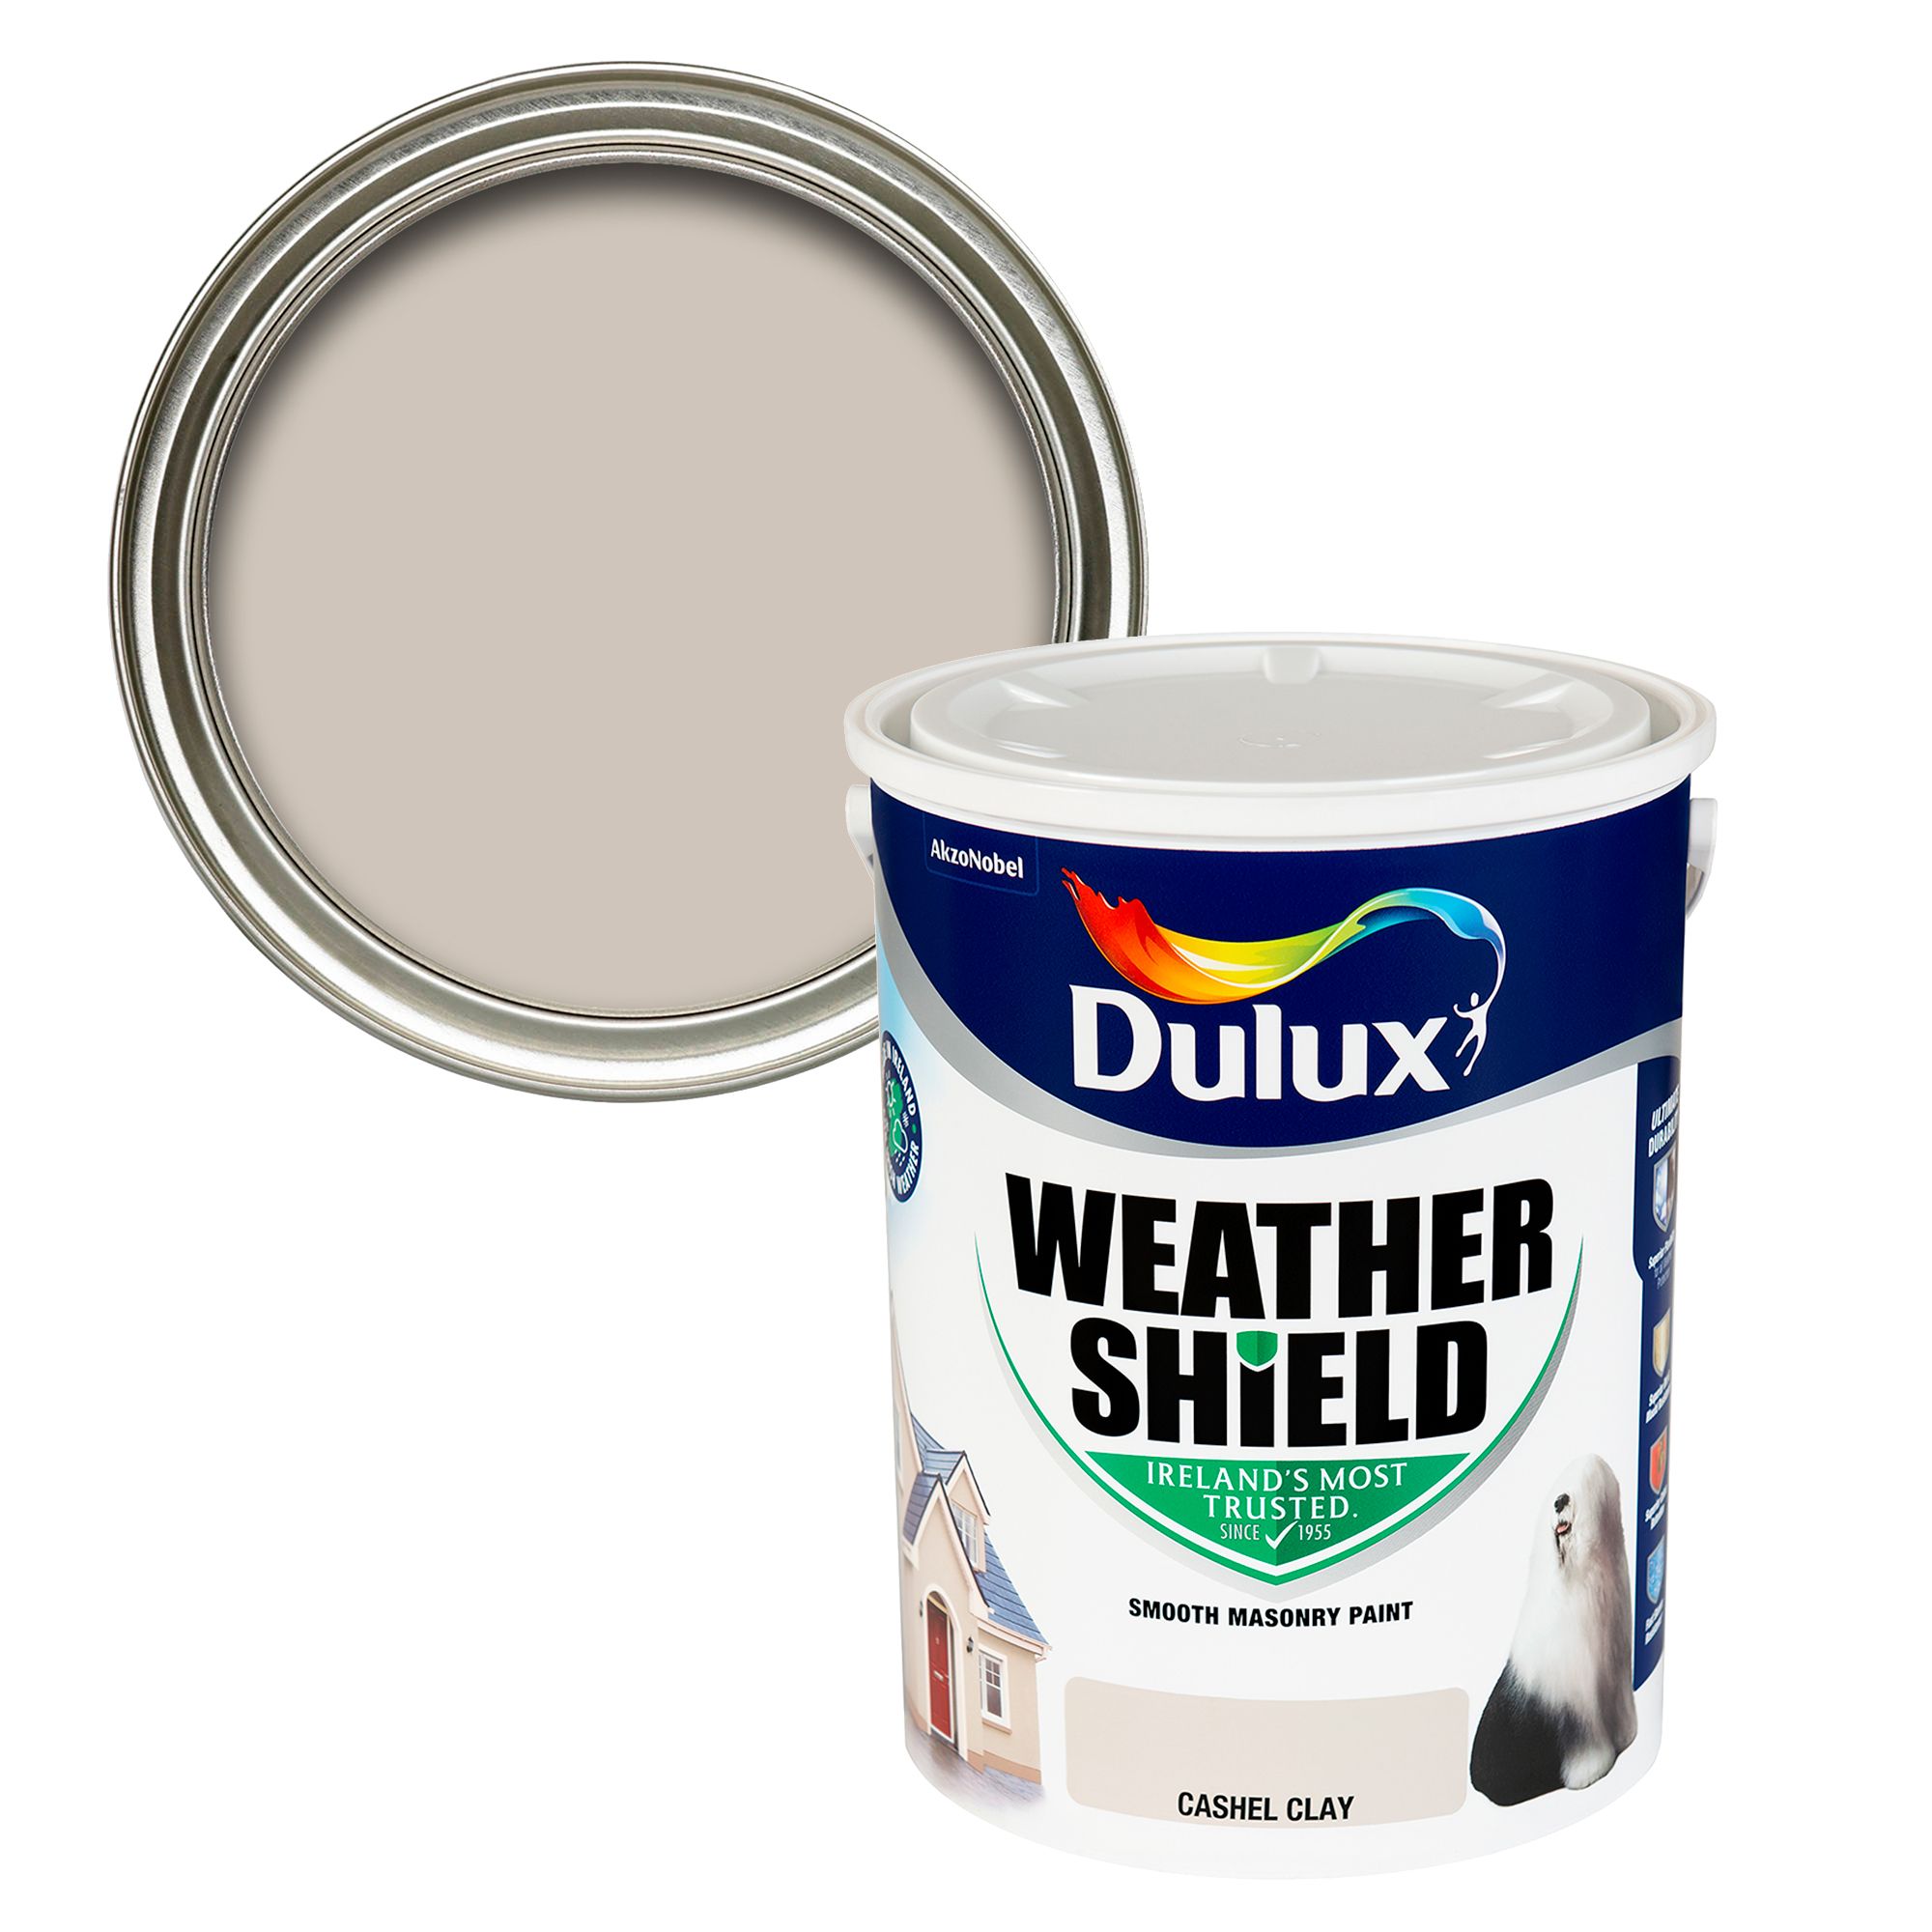 Dulux Weathershield Cashel clay Smooth Super matt Masonry paint, 5L